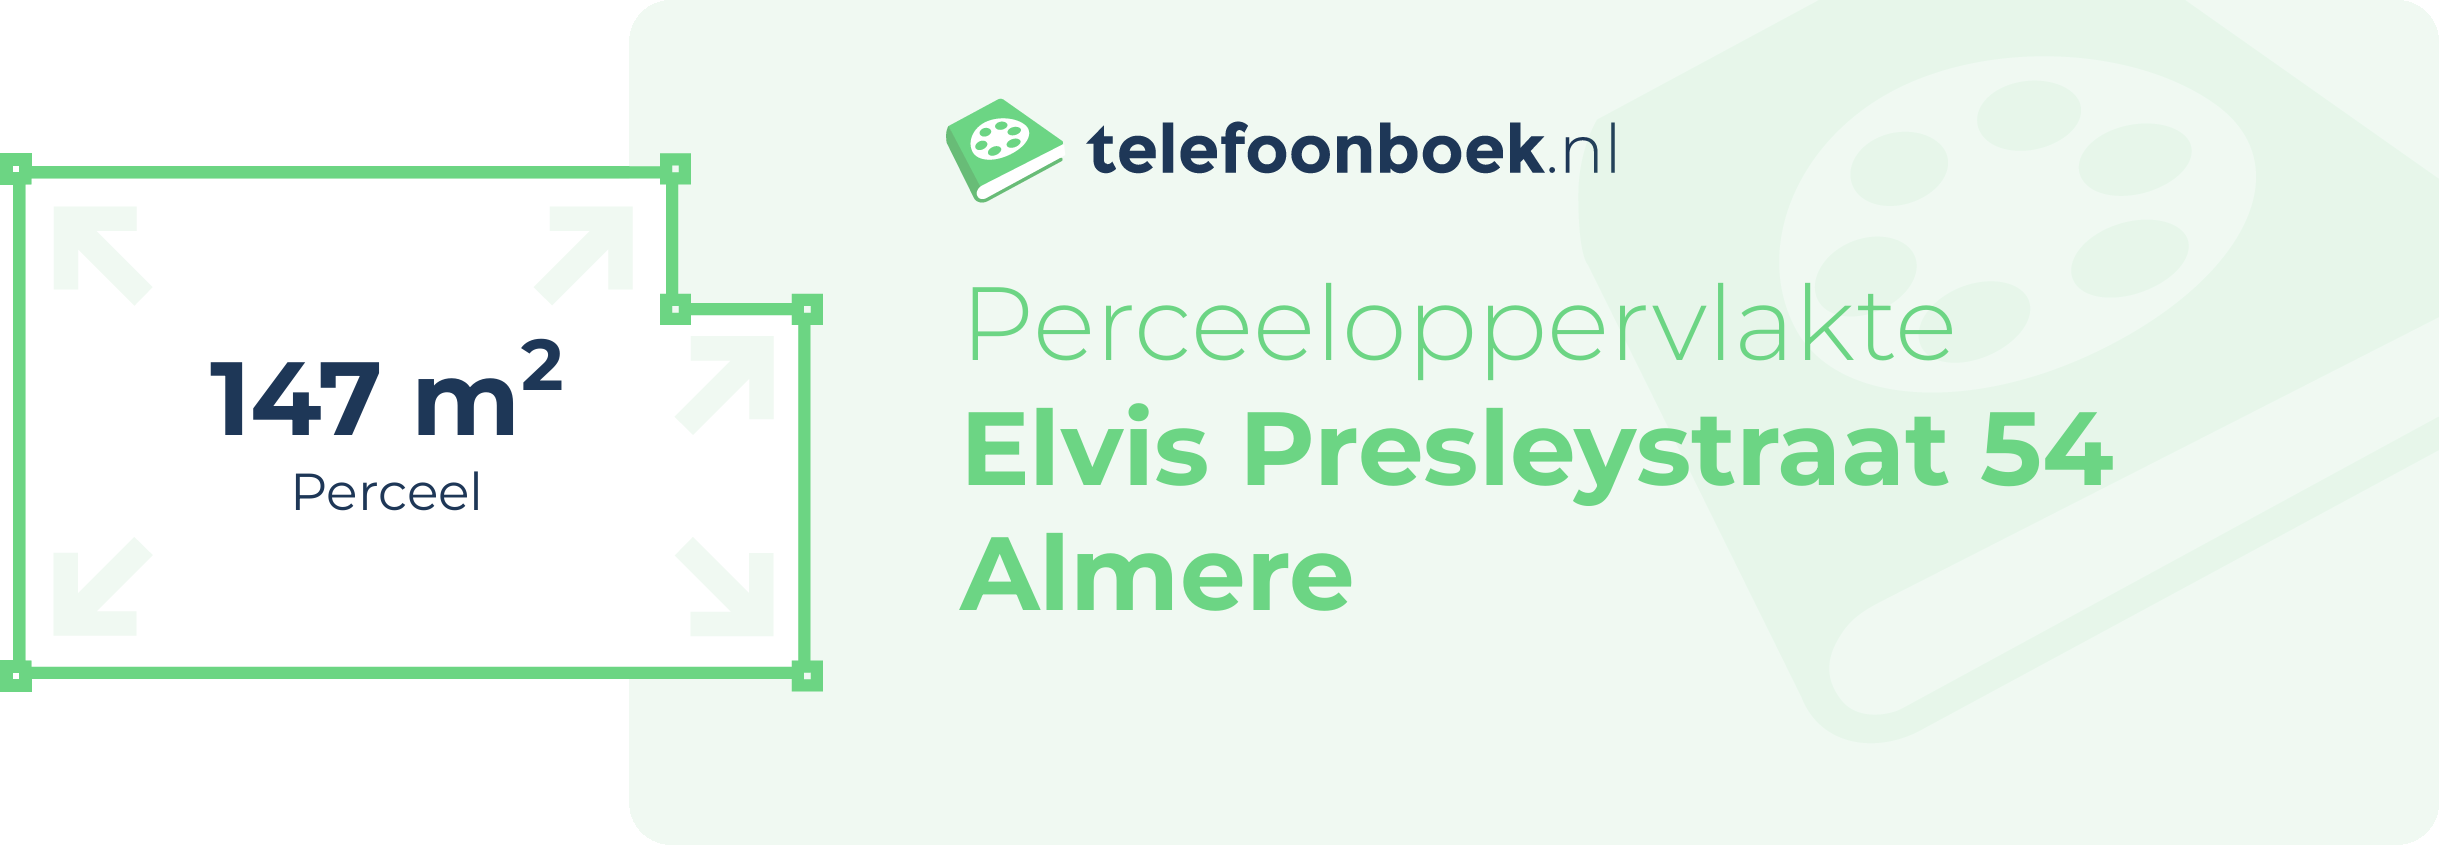 Perceeloppervlakte Elvis Presleystraat 54 Almere